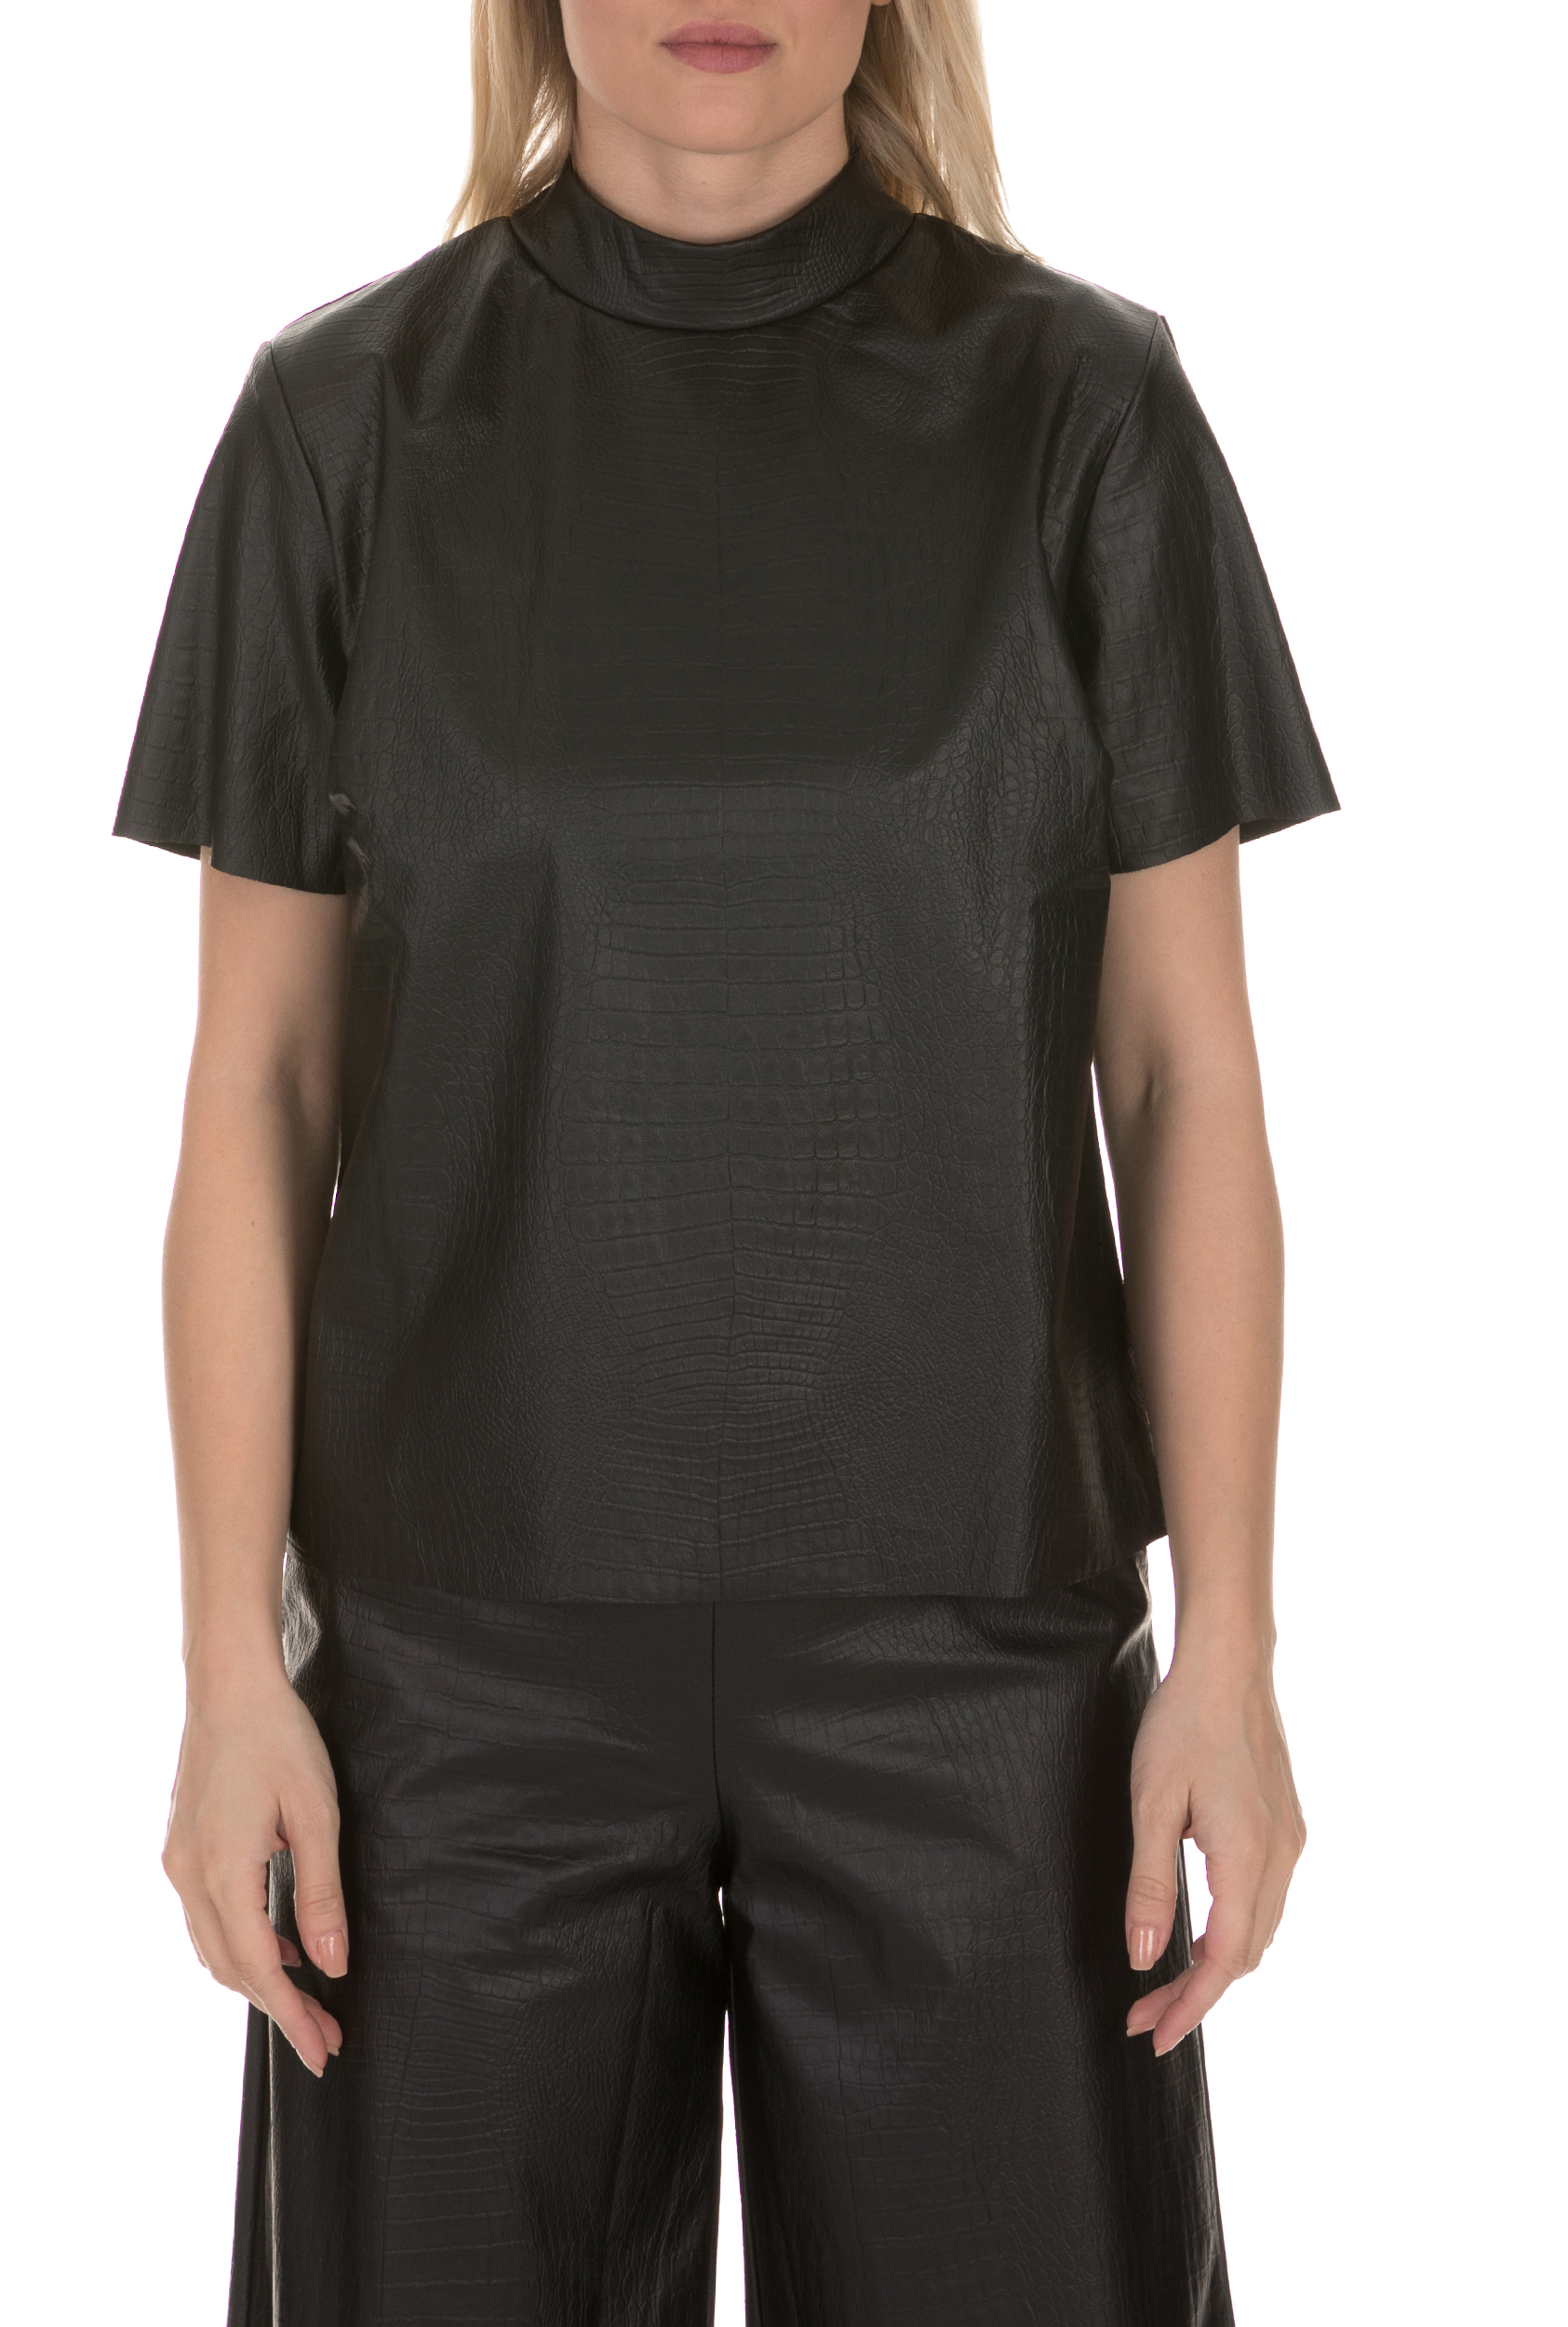 Γυναικεία/Ρούχα/Μπλούζες/Κοντομάνικες LA DOLLS - Γυναικεία δερμάτινη μπλούζα SNAKE LEATHER LA DOLLS μαύρη